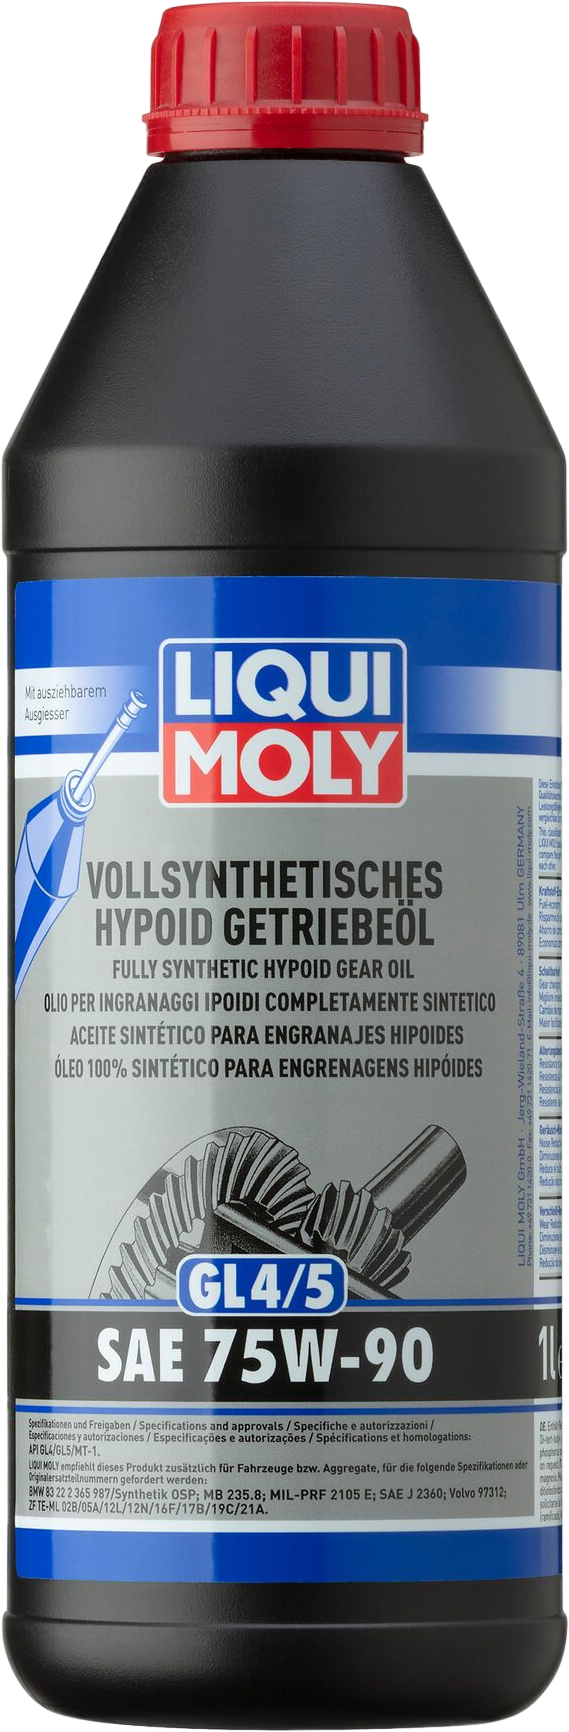 Liqui Moly Volsynthetische Hypoïdtransmissieolie (GL4/5) 75W-90, 1 lt